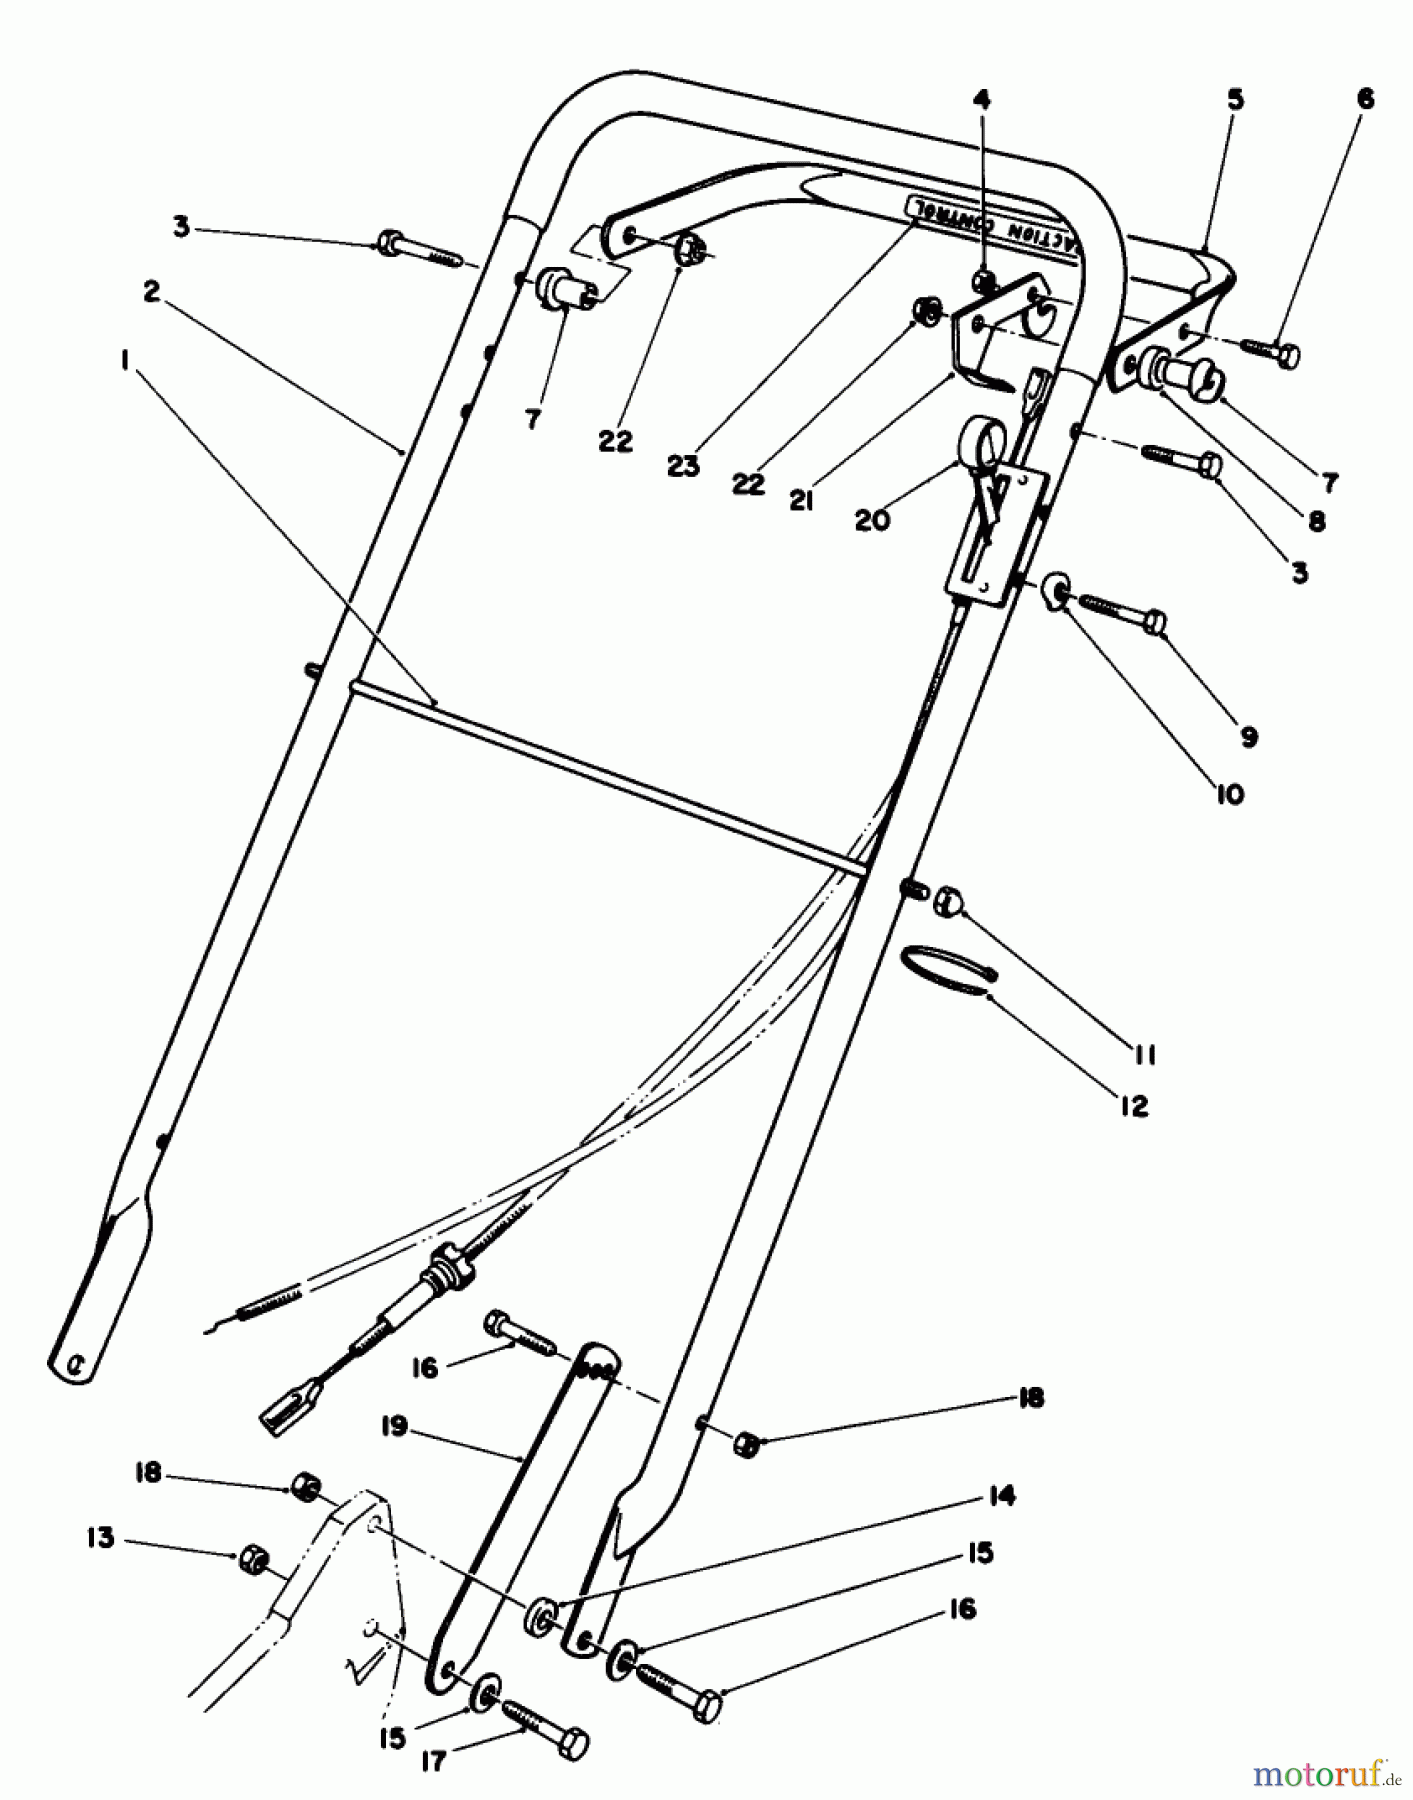  Toro Neu Mowers, Walk-Behind Seite 2 22035 - Toro Lawnmower, 1988 (8002990-8999999) HANDLE ASSEMBLY (MODEL 22035)